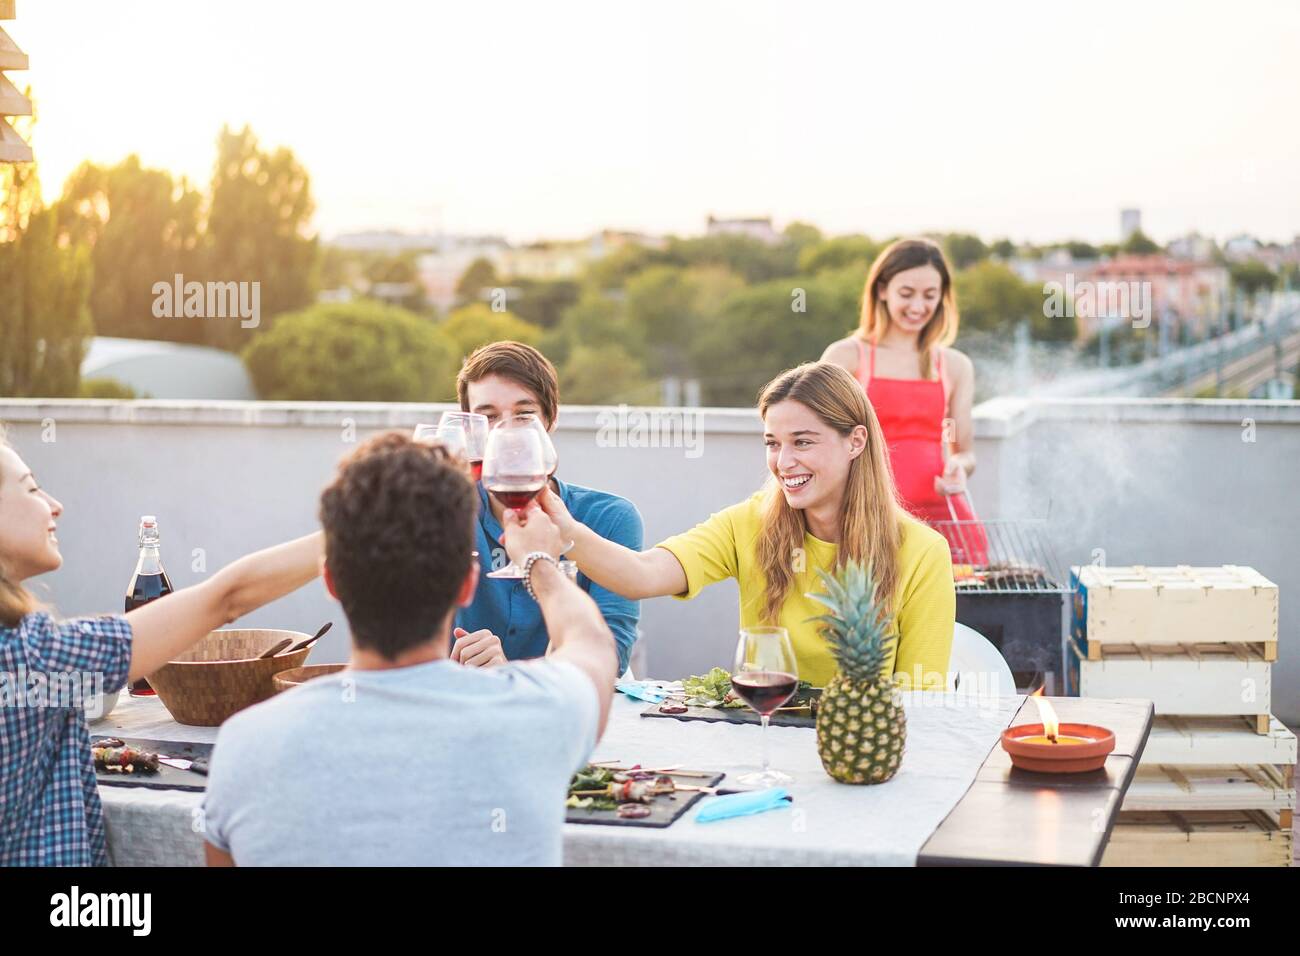 Junge Freunde, die bei Sonnenuntergang auf der Penthouse-Terrasse Grillparty haben - glückliche Leute, die ein grillabendessen im Freien machen, Fleisch kochen und Wein trinken - konzentrieren sich auf die Bohrinsel Stockfoto